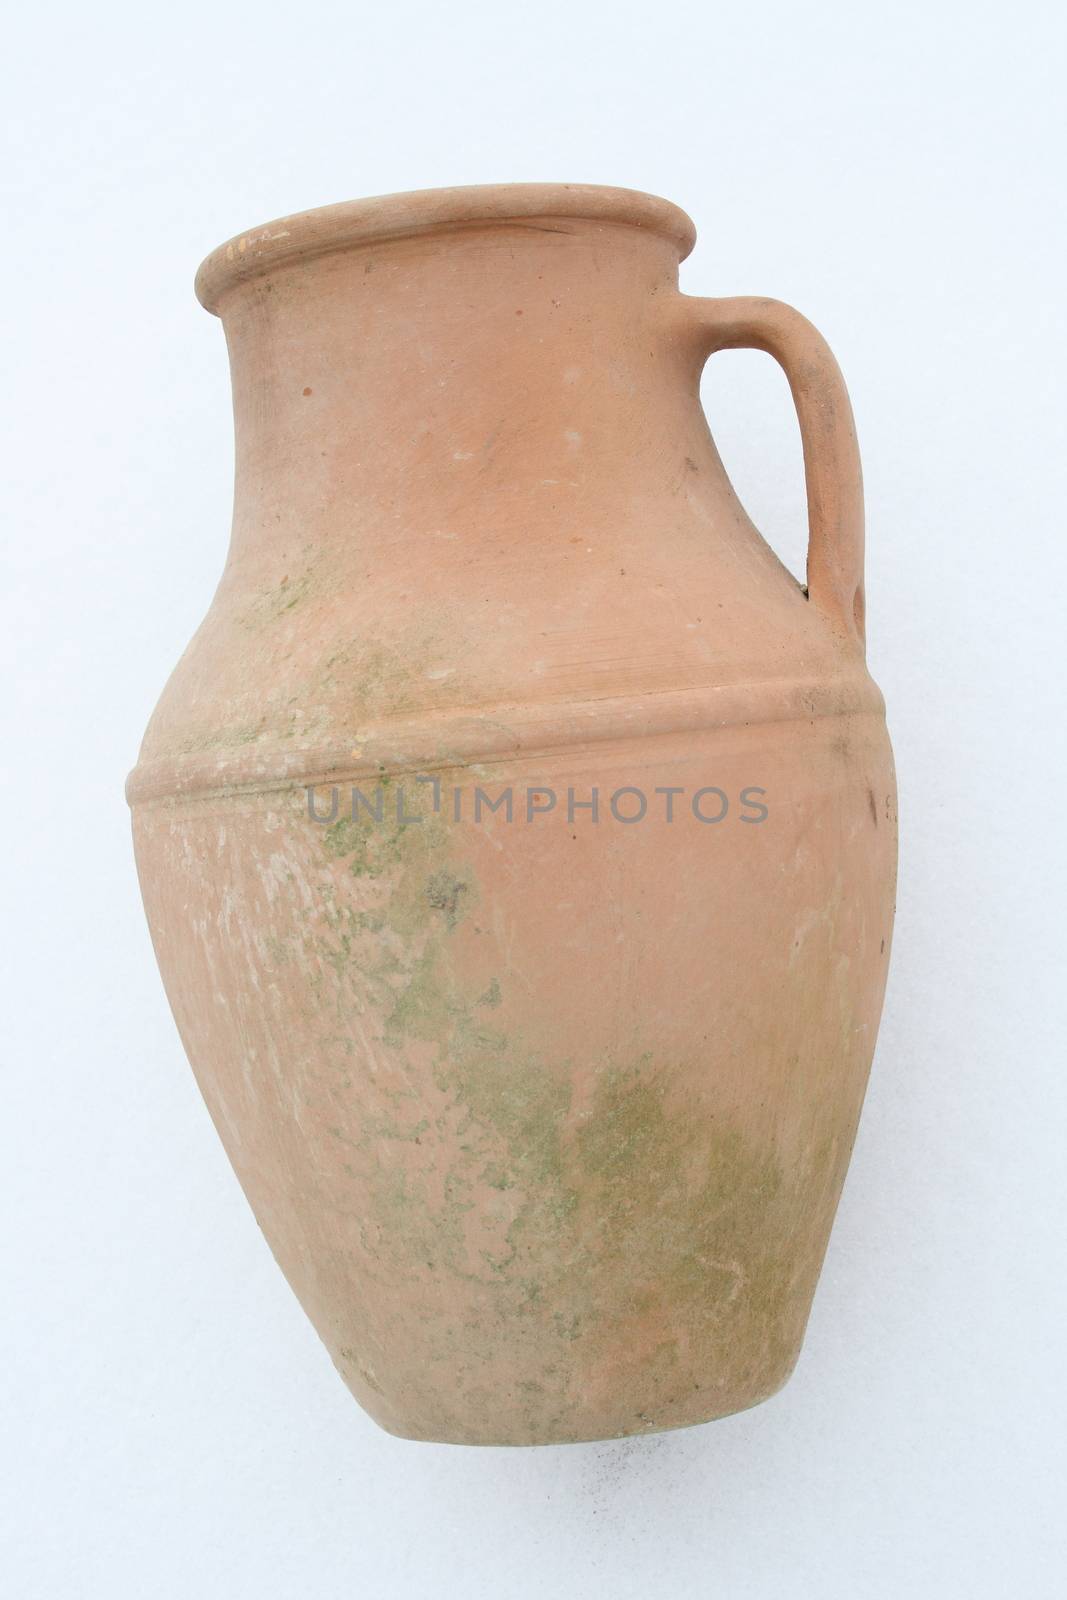 Terracotta amphora lying on a white background  liegende Terrakotta Amphore auf wei�em Hintergrund  